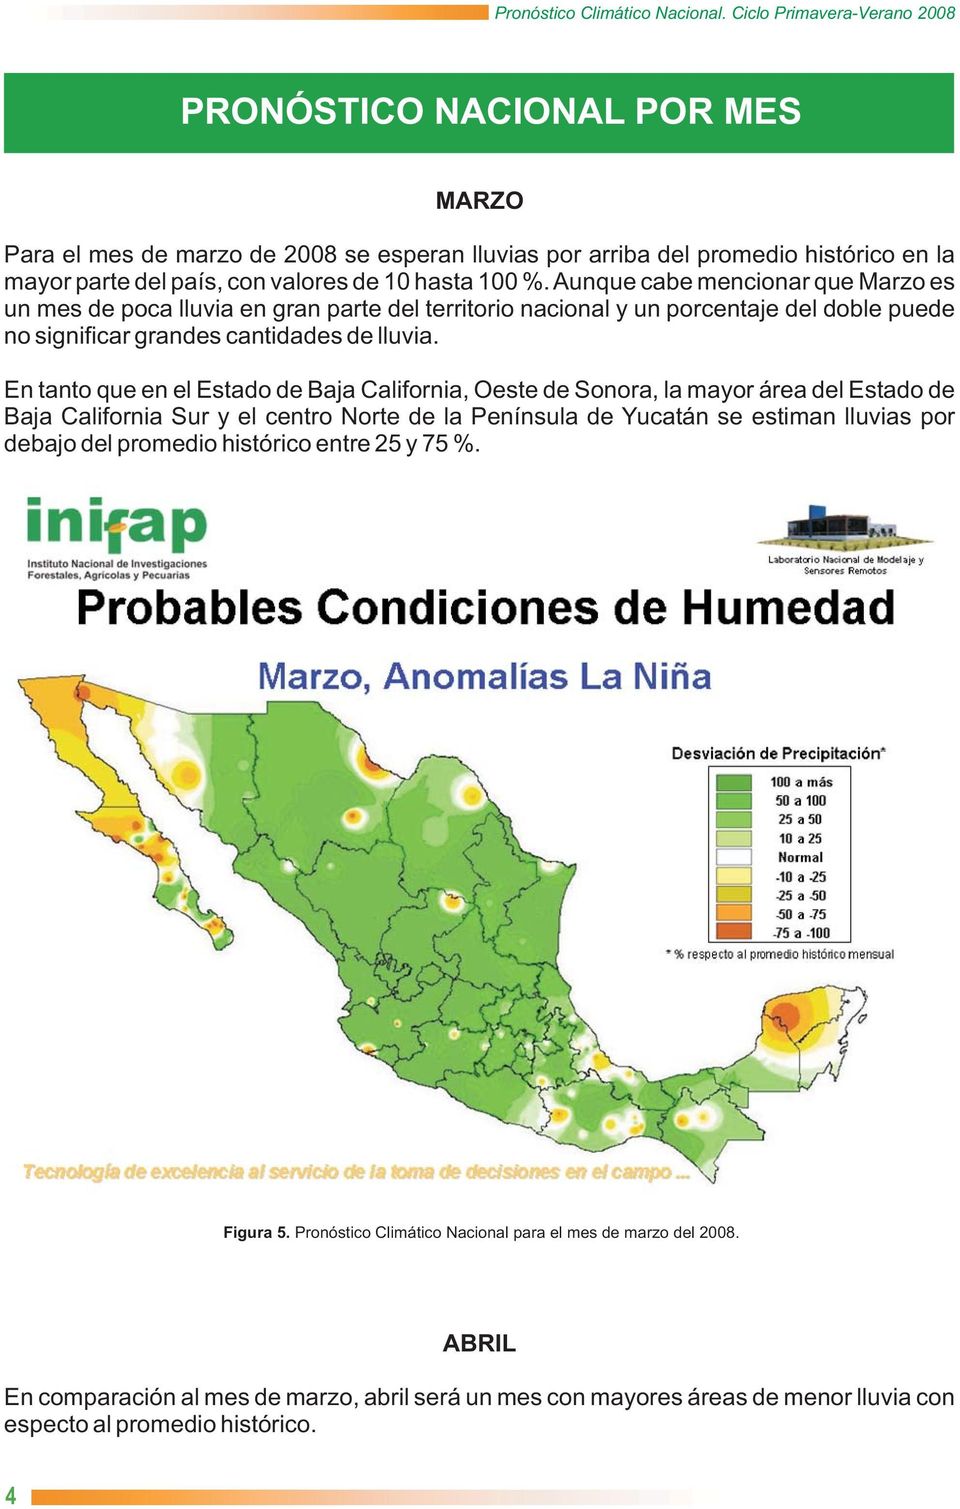 En tanto que en el Estado de Baja California, Oeste de Sonora, la mayor área del Estado de Baja California Sur y el centro Norte de la Península de Yucatán se estiman lluvias por debajo del